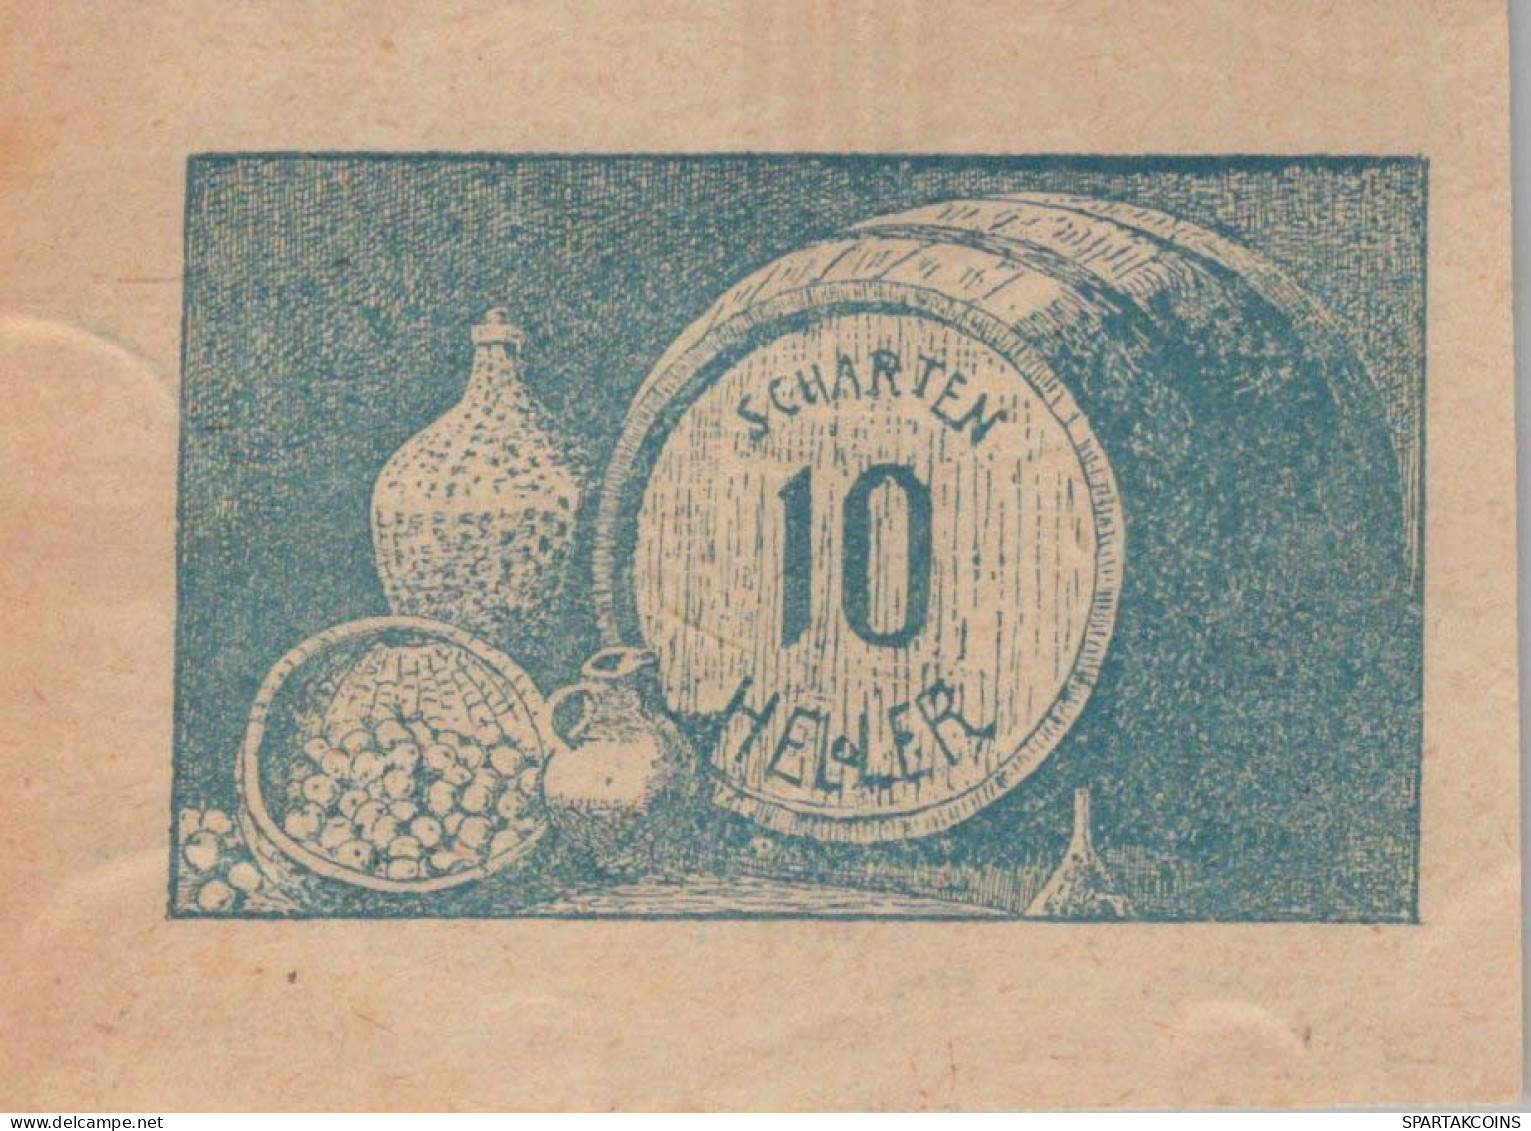 10 HELLER 1920 Stadt SCHARTEN Oberösterreich Österreich Notgeld Banknote #PE709 - [11] Emissions Locales